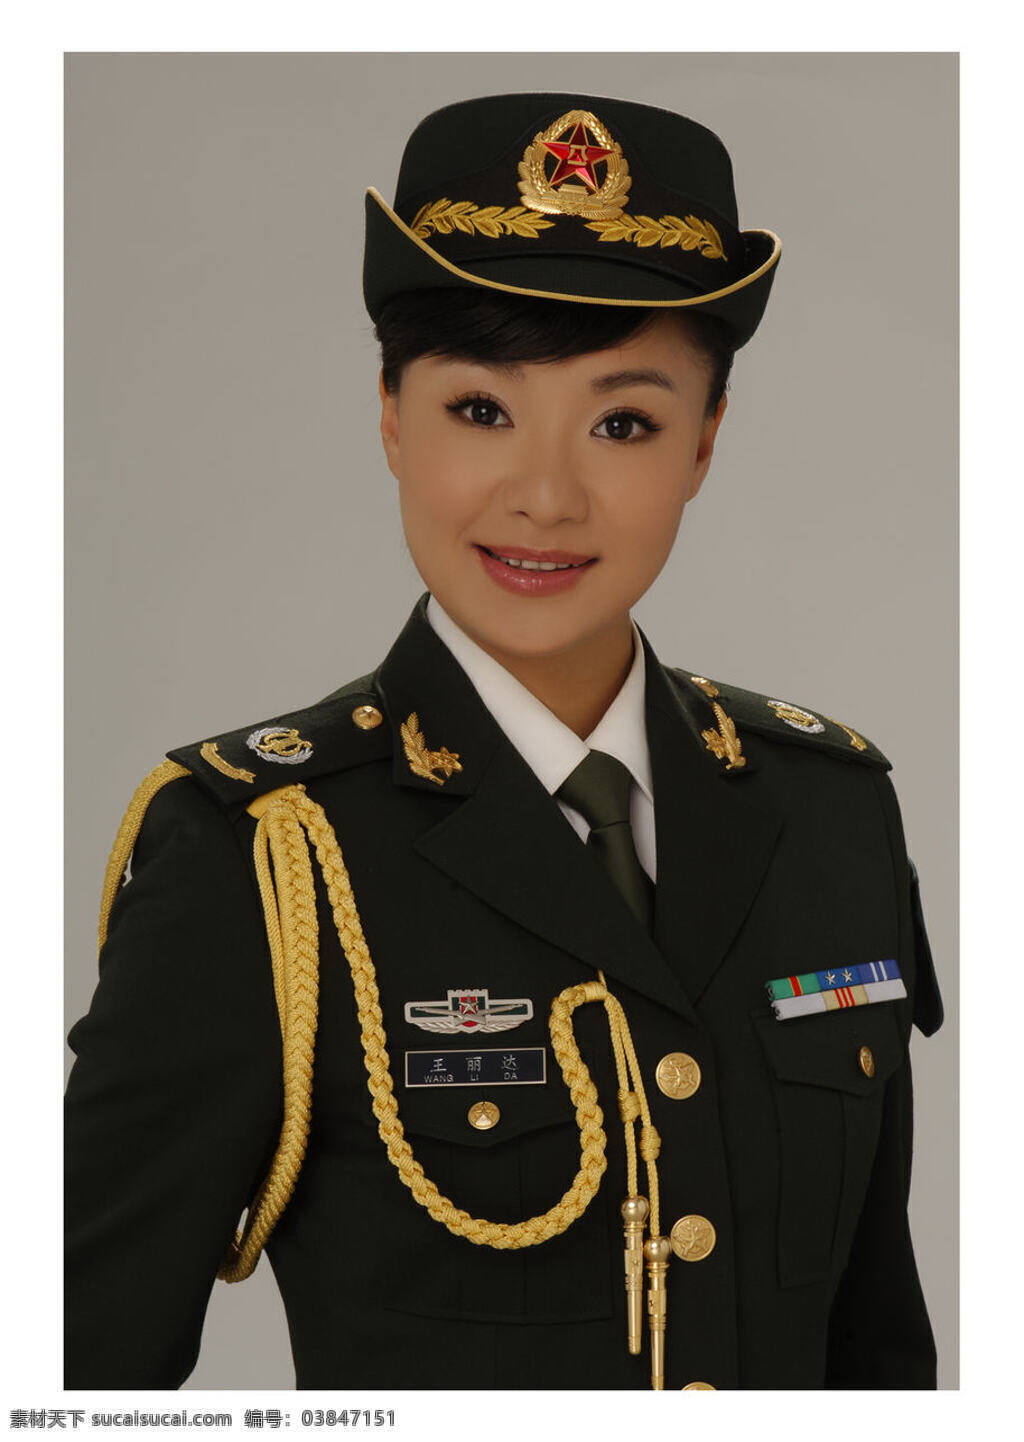 王丽达 中国大陆 明星 歌手 军人 戎装 明星偶像 人物图库